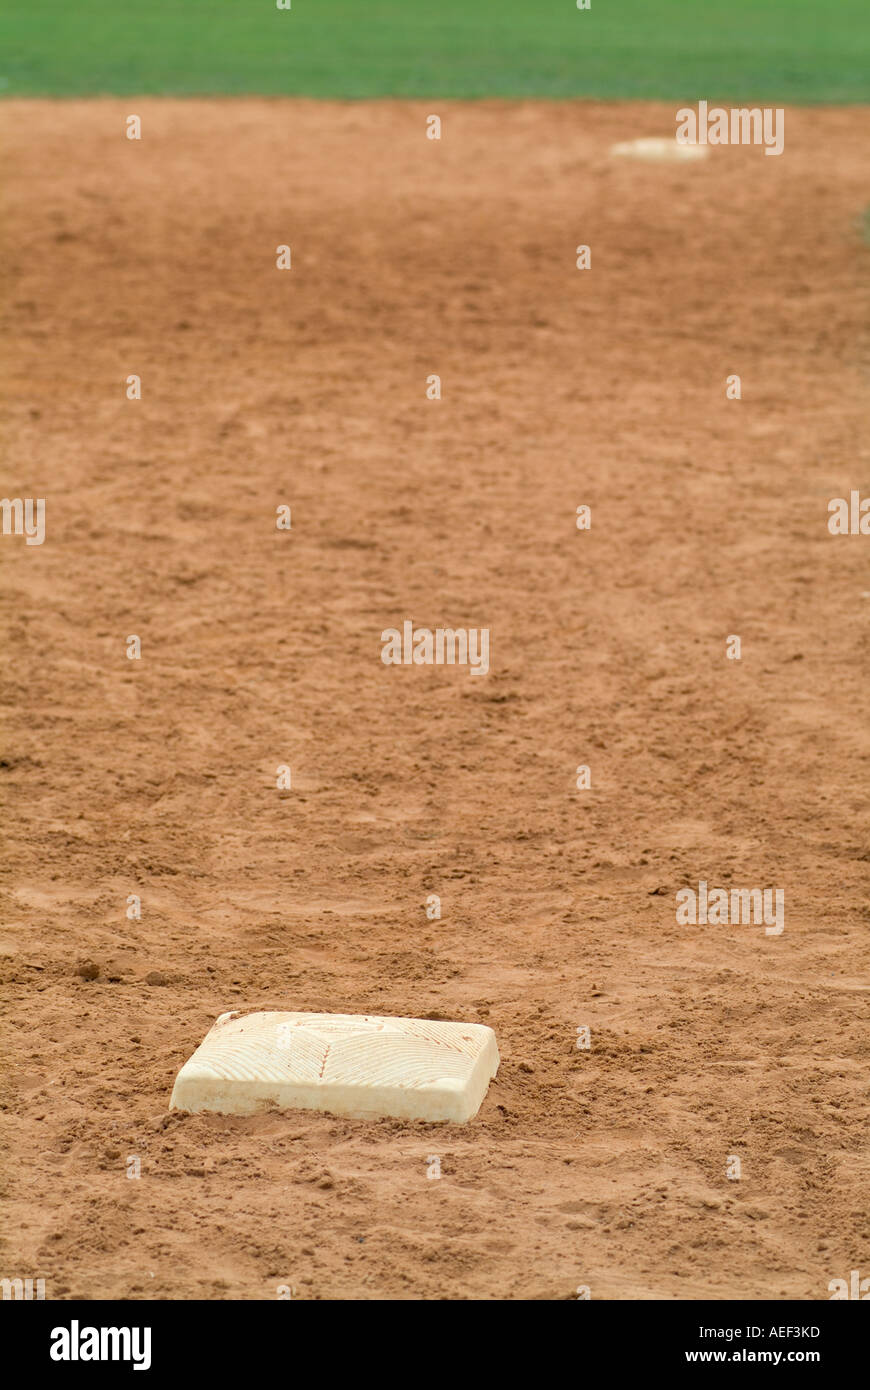 La tercera base del béisbol bases deportivas Deportes Foto de stock